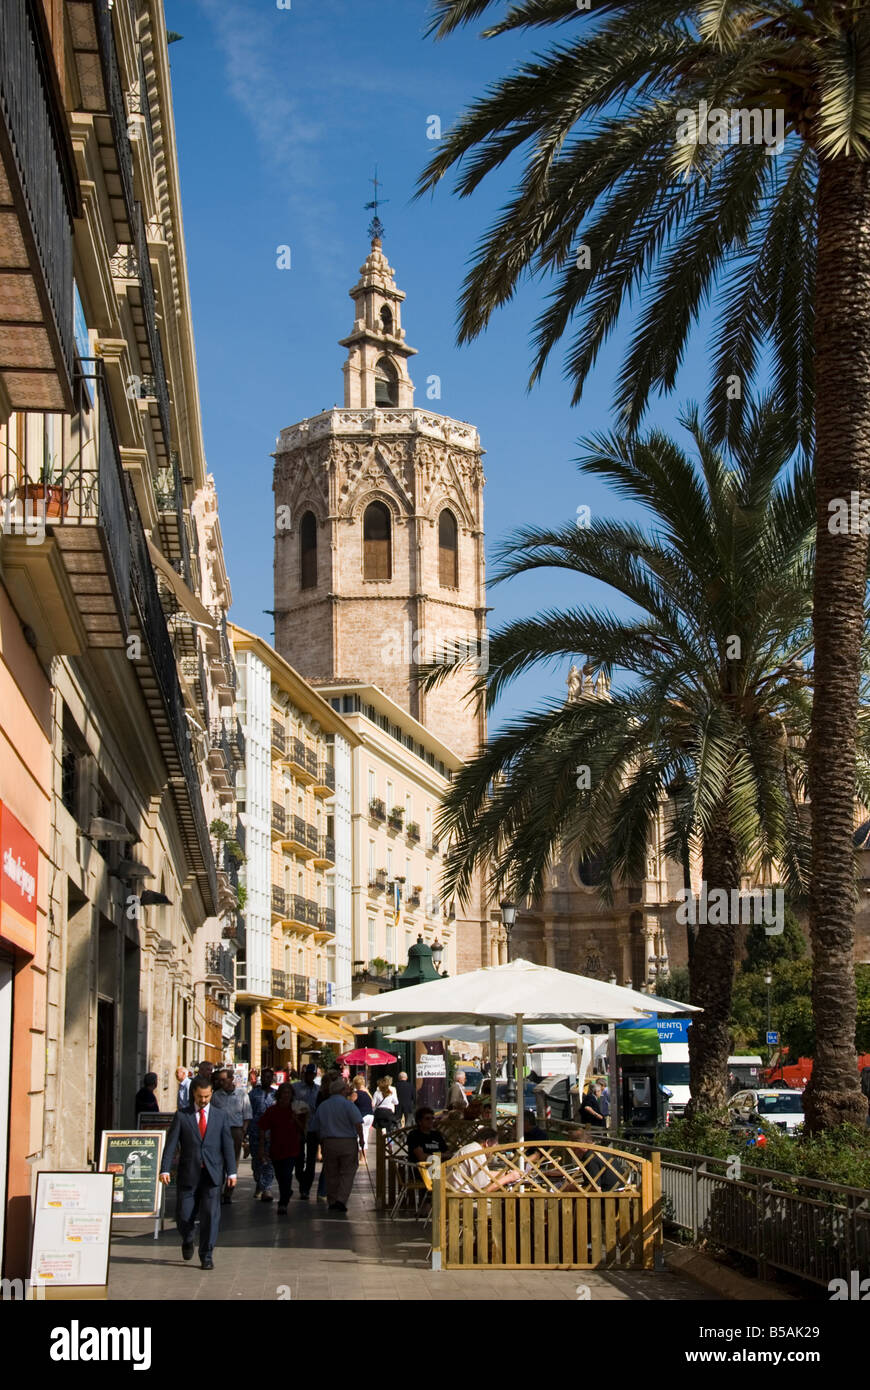 El Miguelete el campanario de la catedral, en la Plaza de la Reina en el centro histórico de la ciudad de Valencia, España Foto de stock